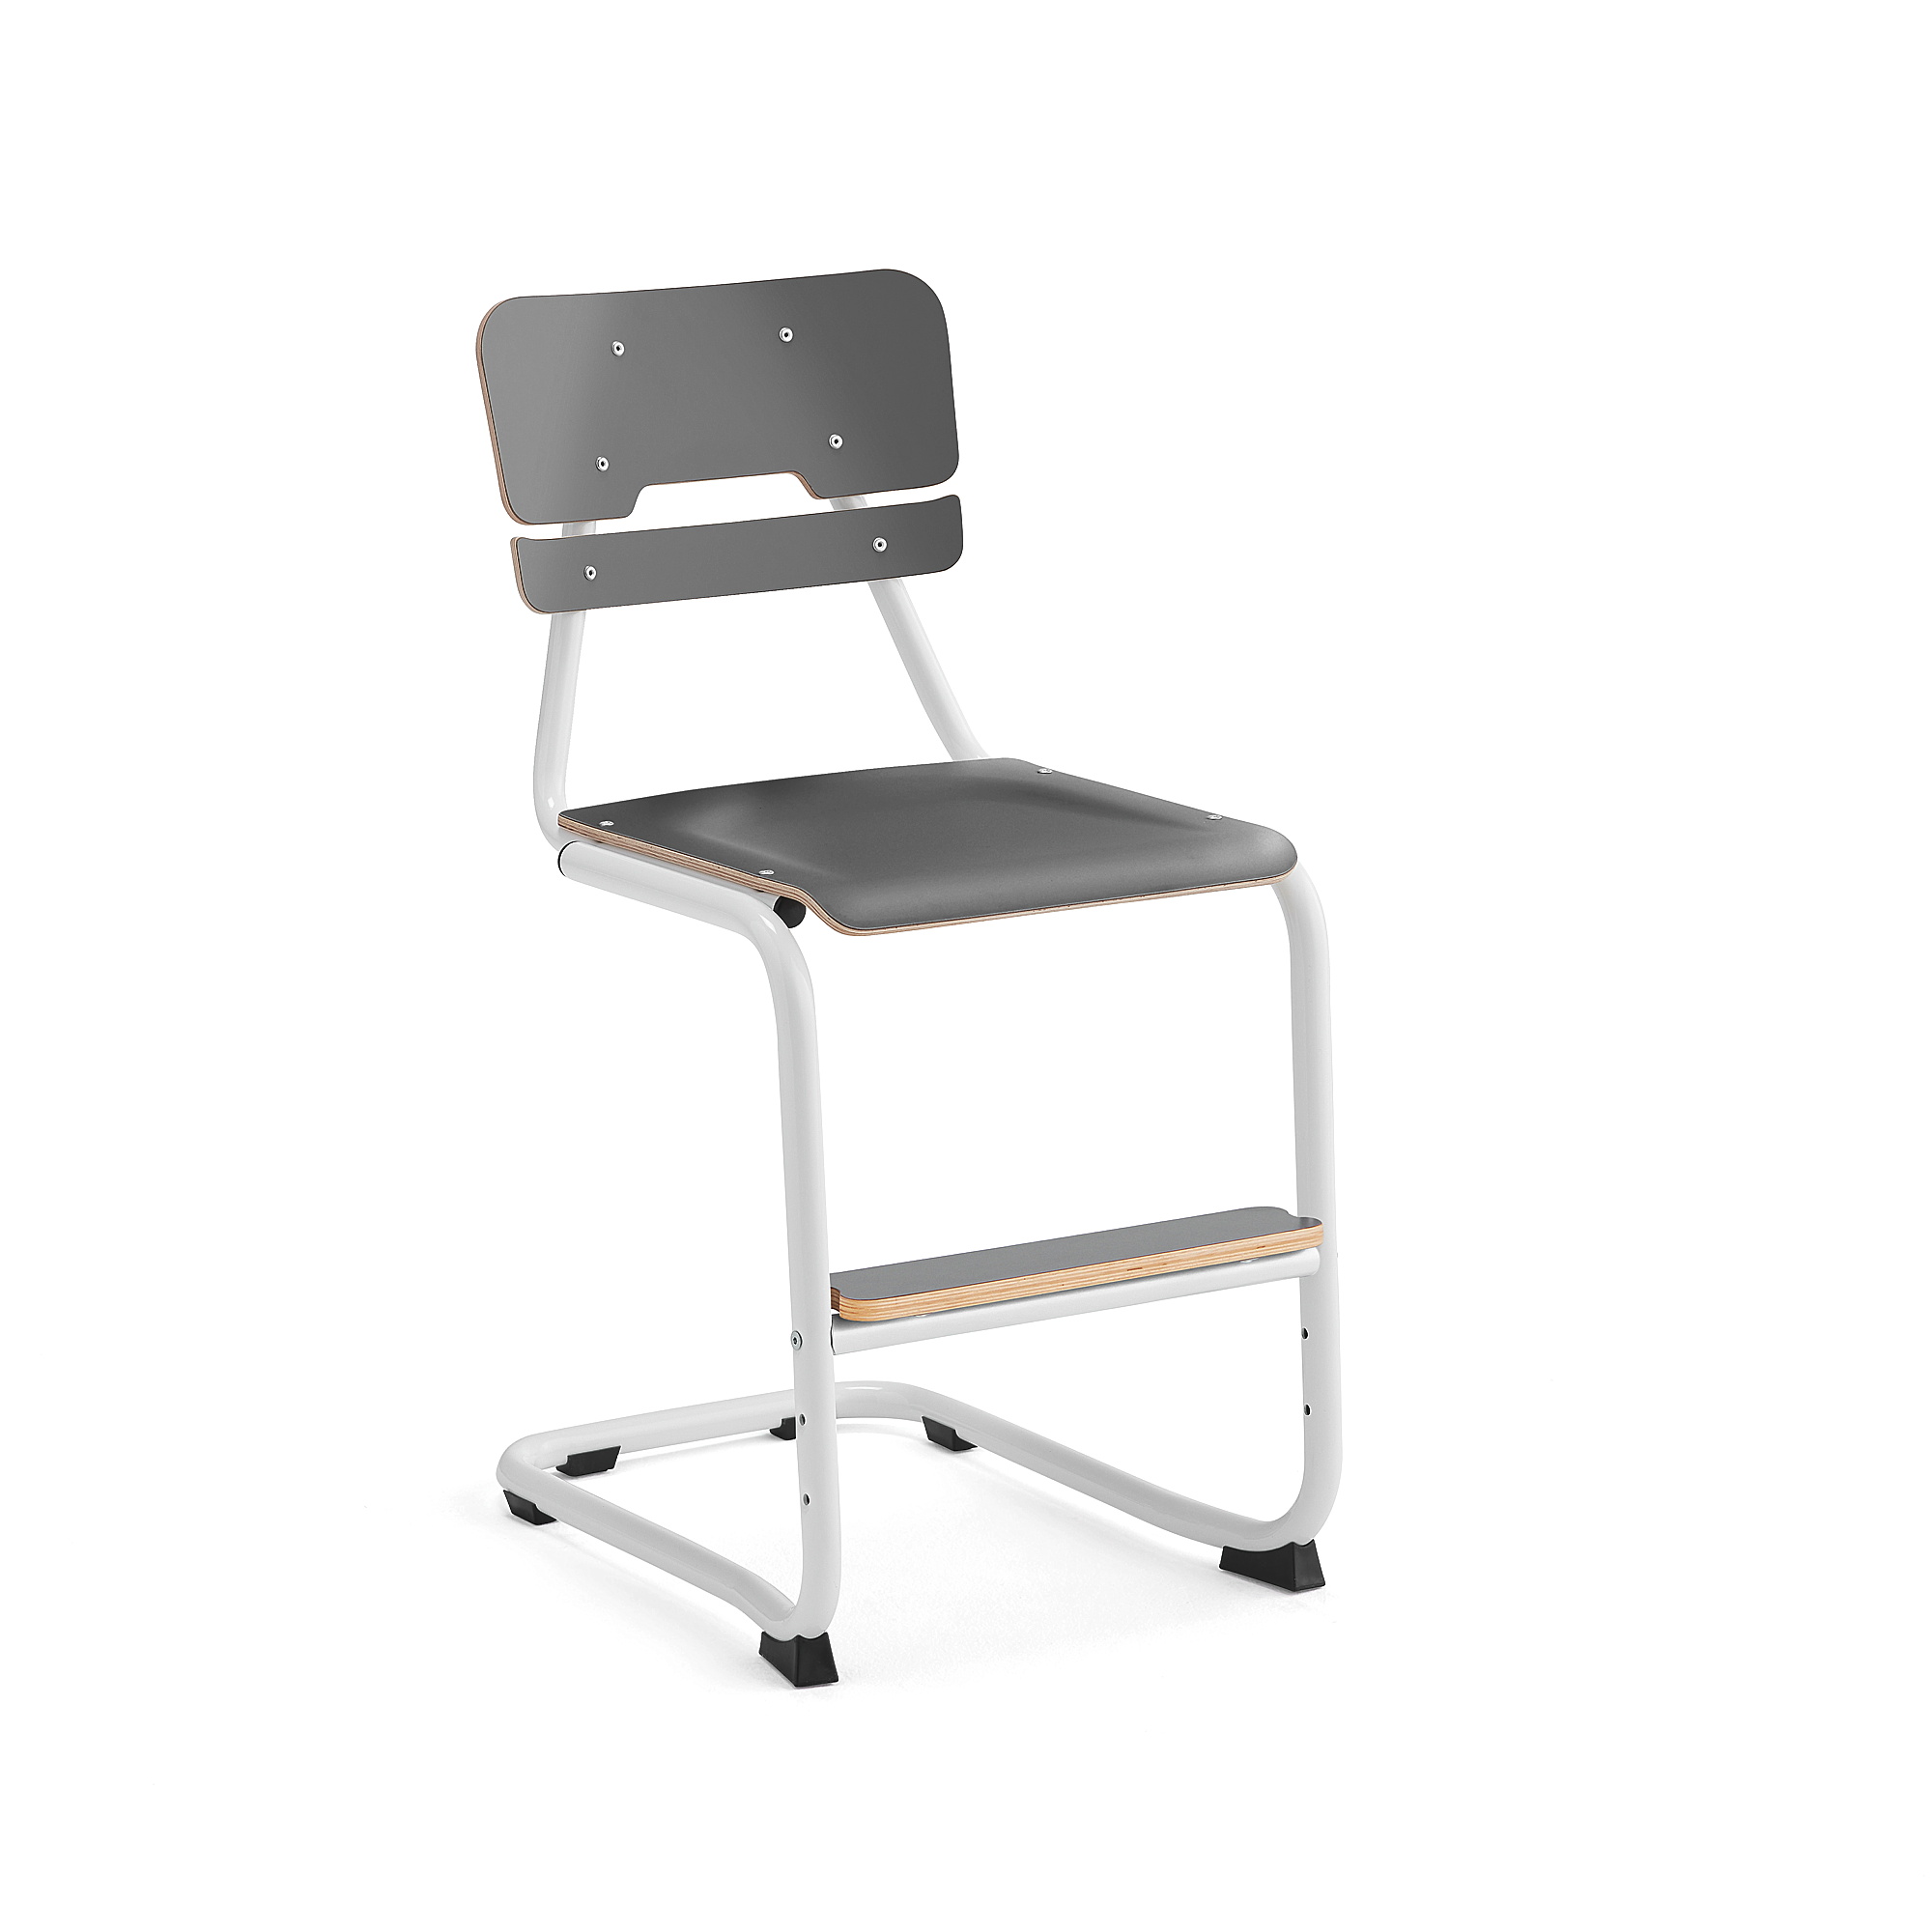 Školní židle LEGERE III, výška 500 mm, bílá, antracitově šedá